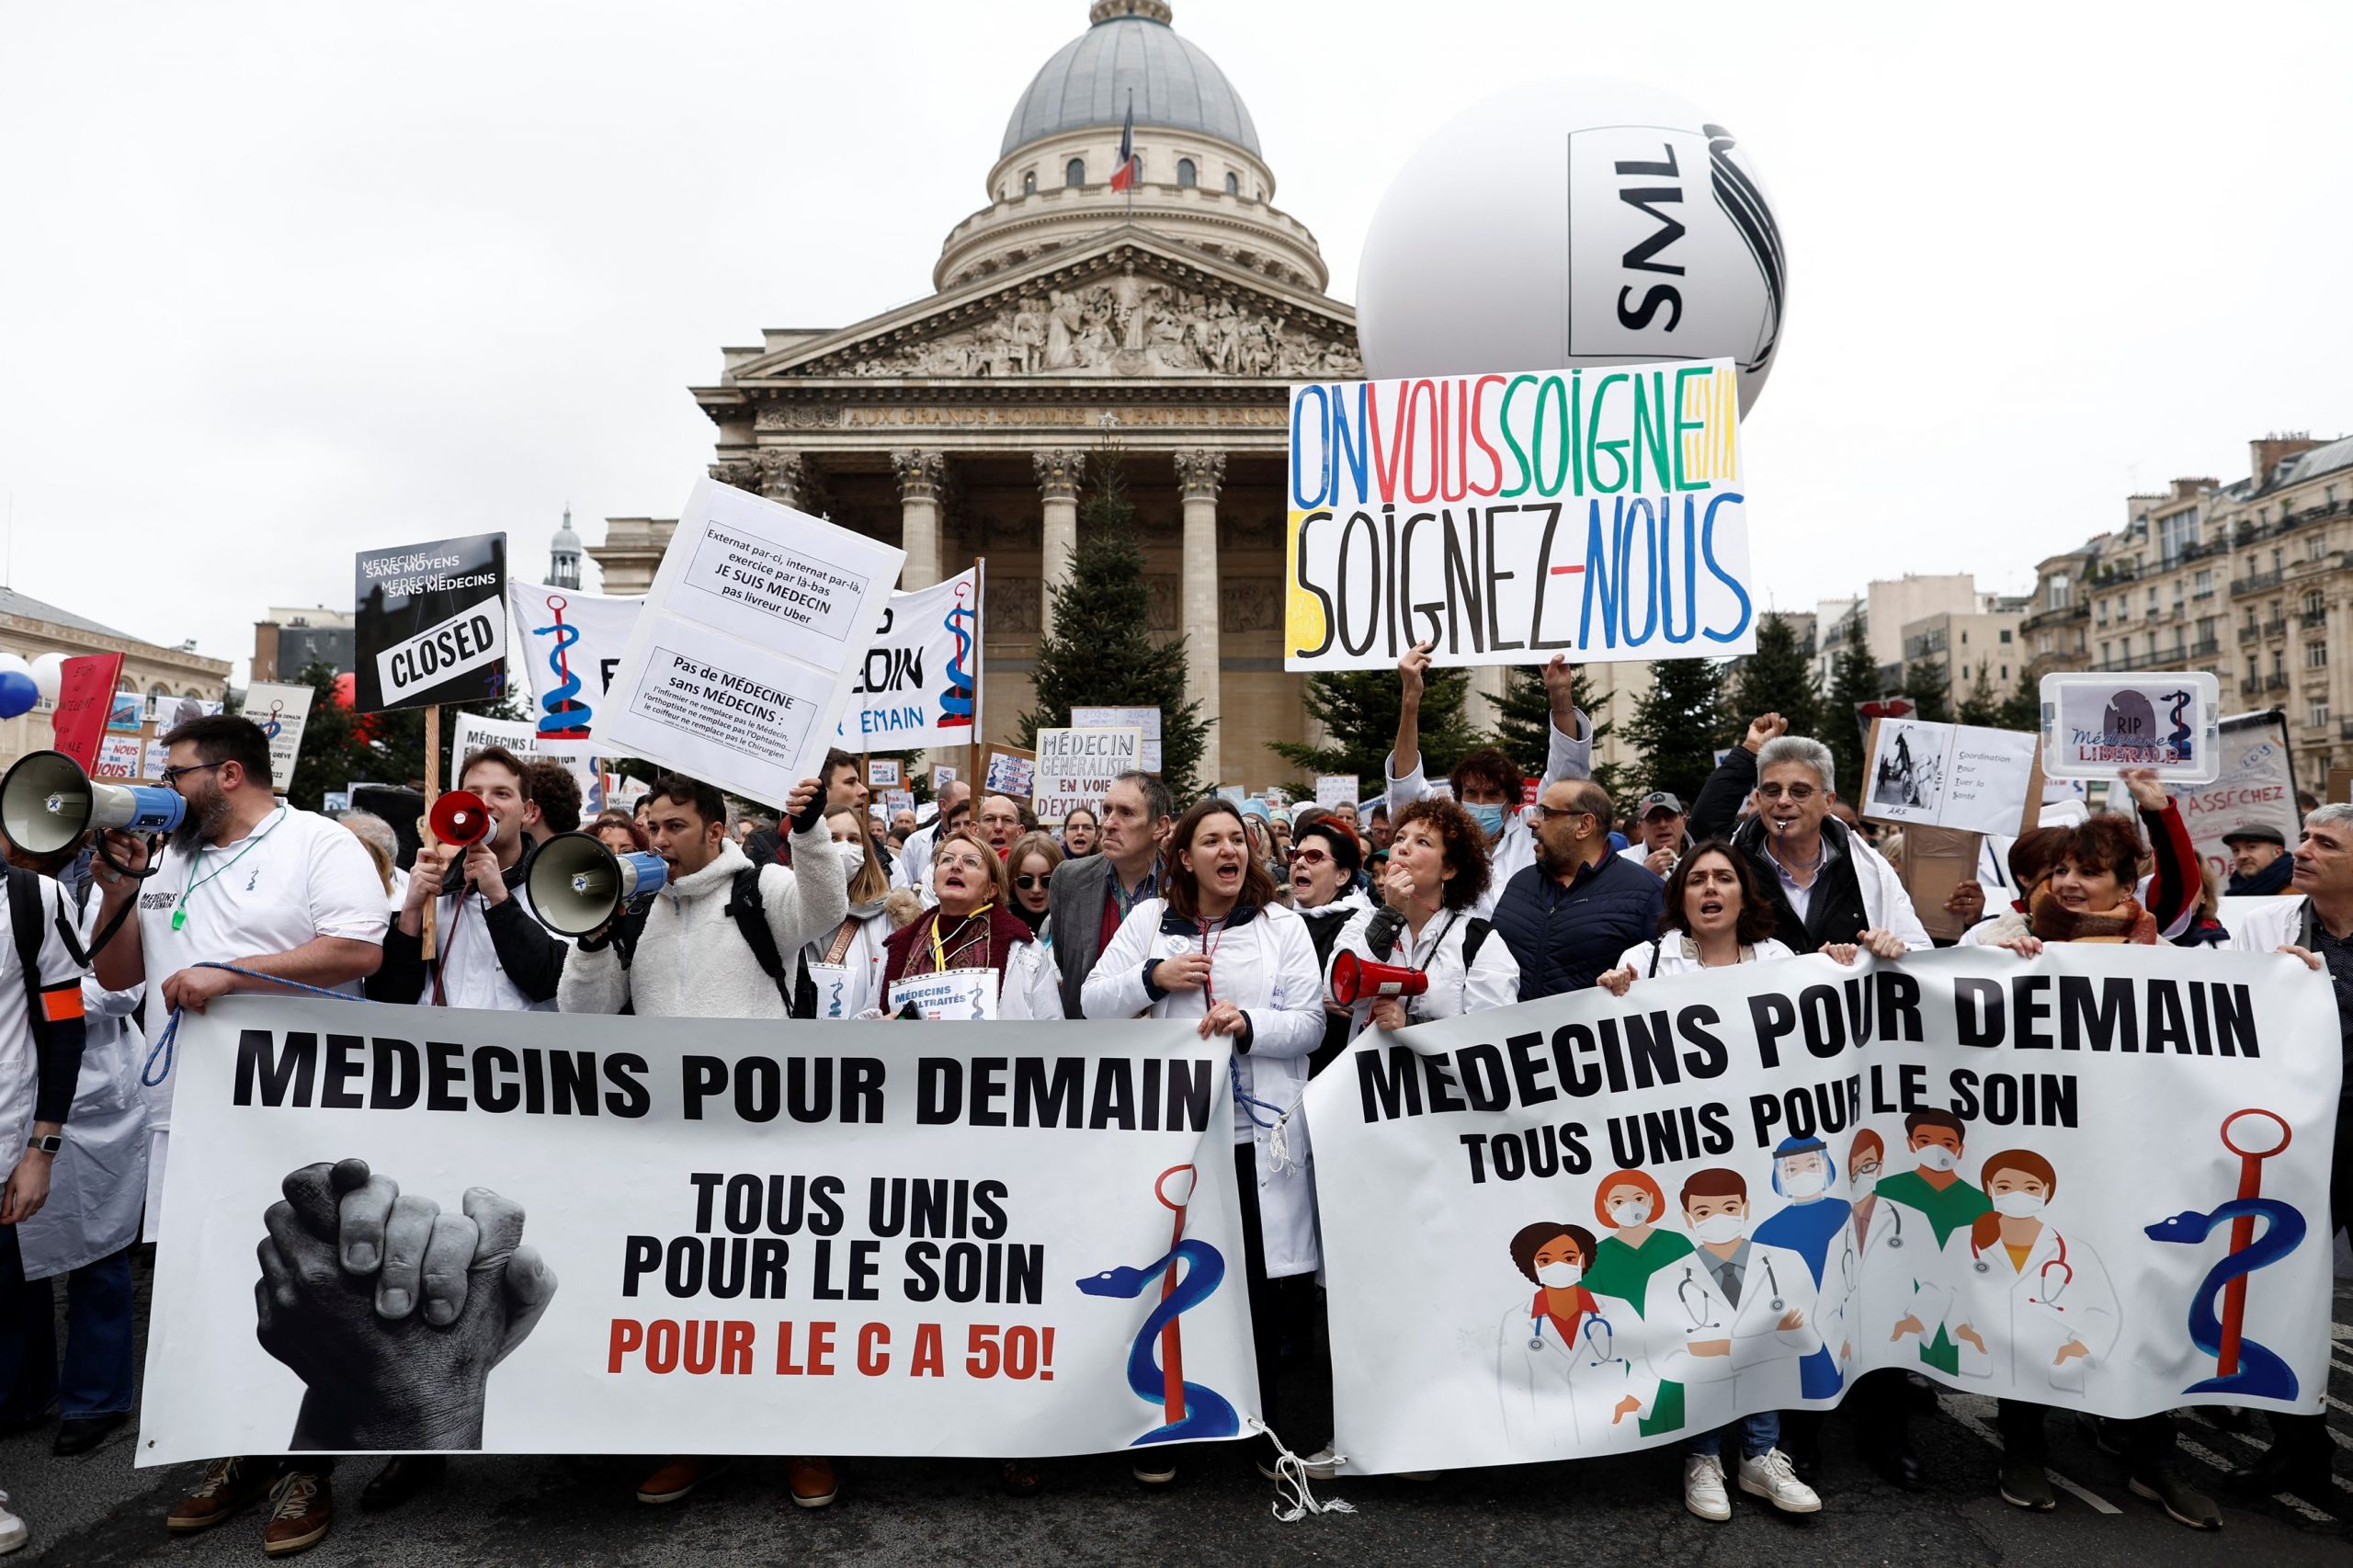 Γαλλία – συνταξιοδοτικό: Πανεθνική απεργία την Πέμπτη, κάλεσμα για μαζικές διαδηλώσεις